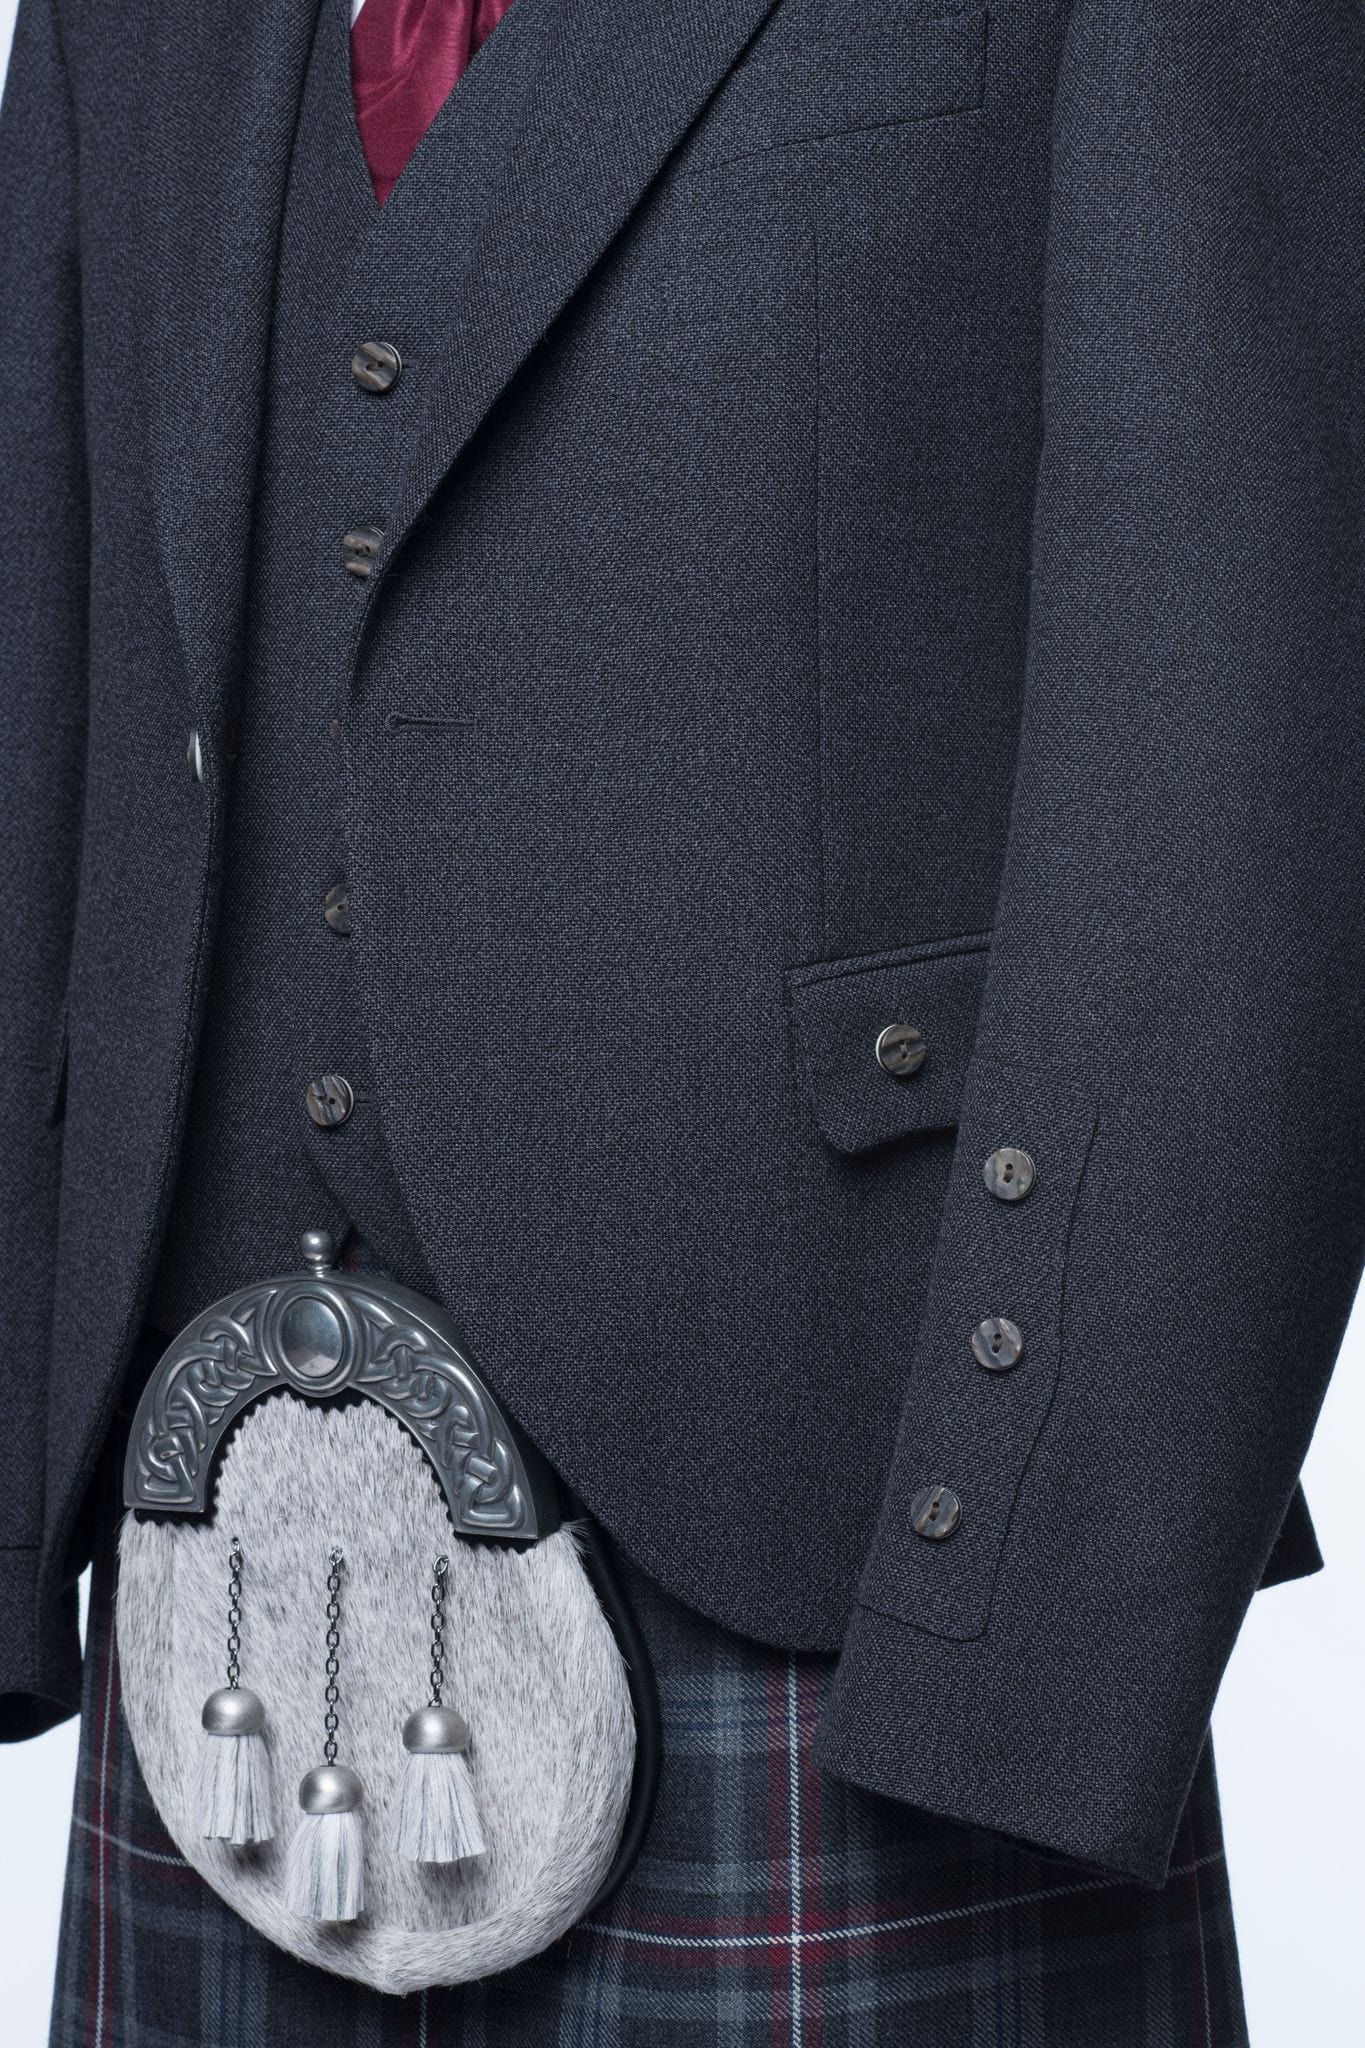 Oban Grey Tweed Kilt Outfit - MacGregor and MacDuff